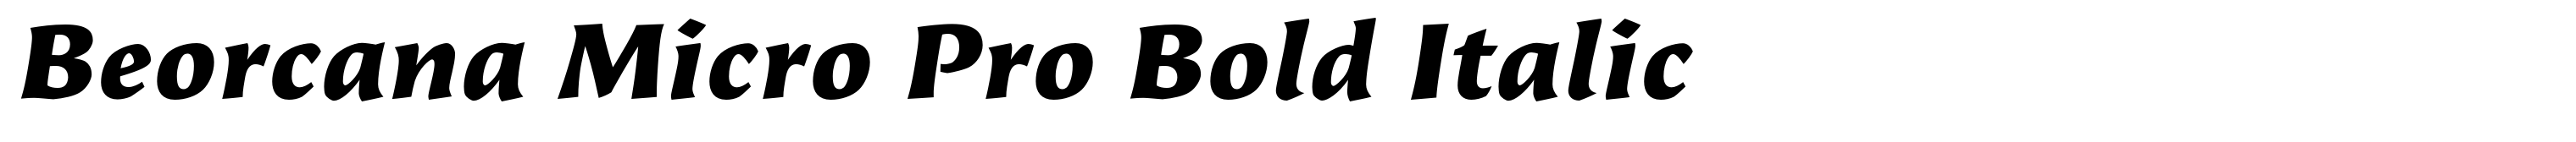 Beorcana Micro Pro Bold Italic